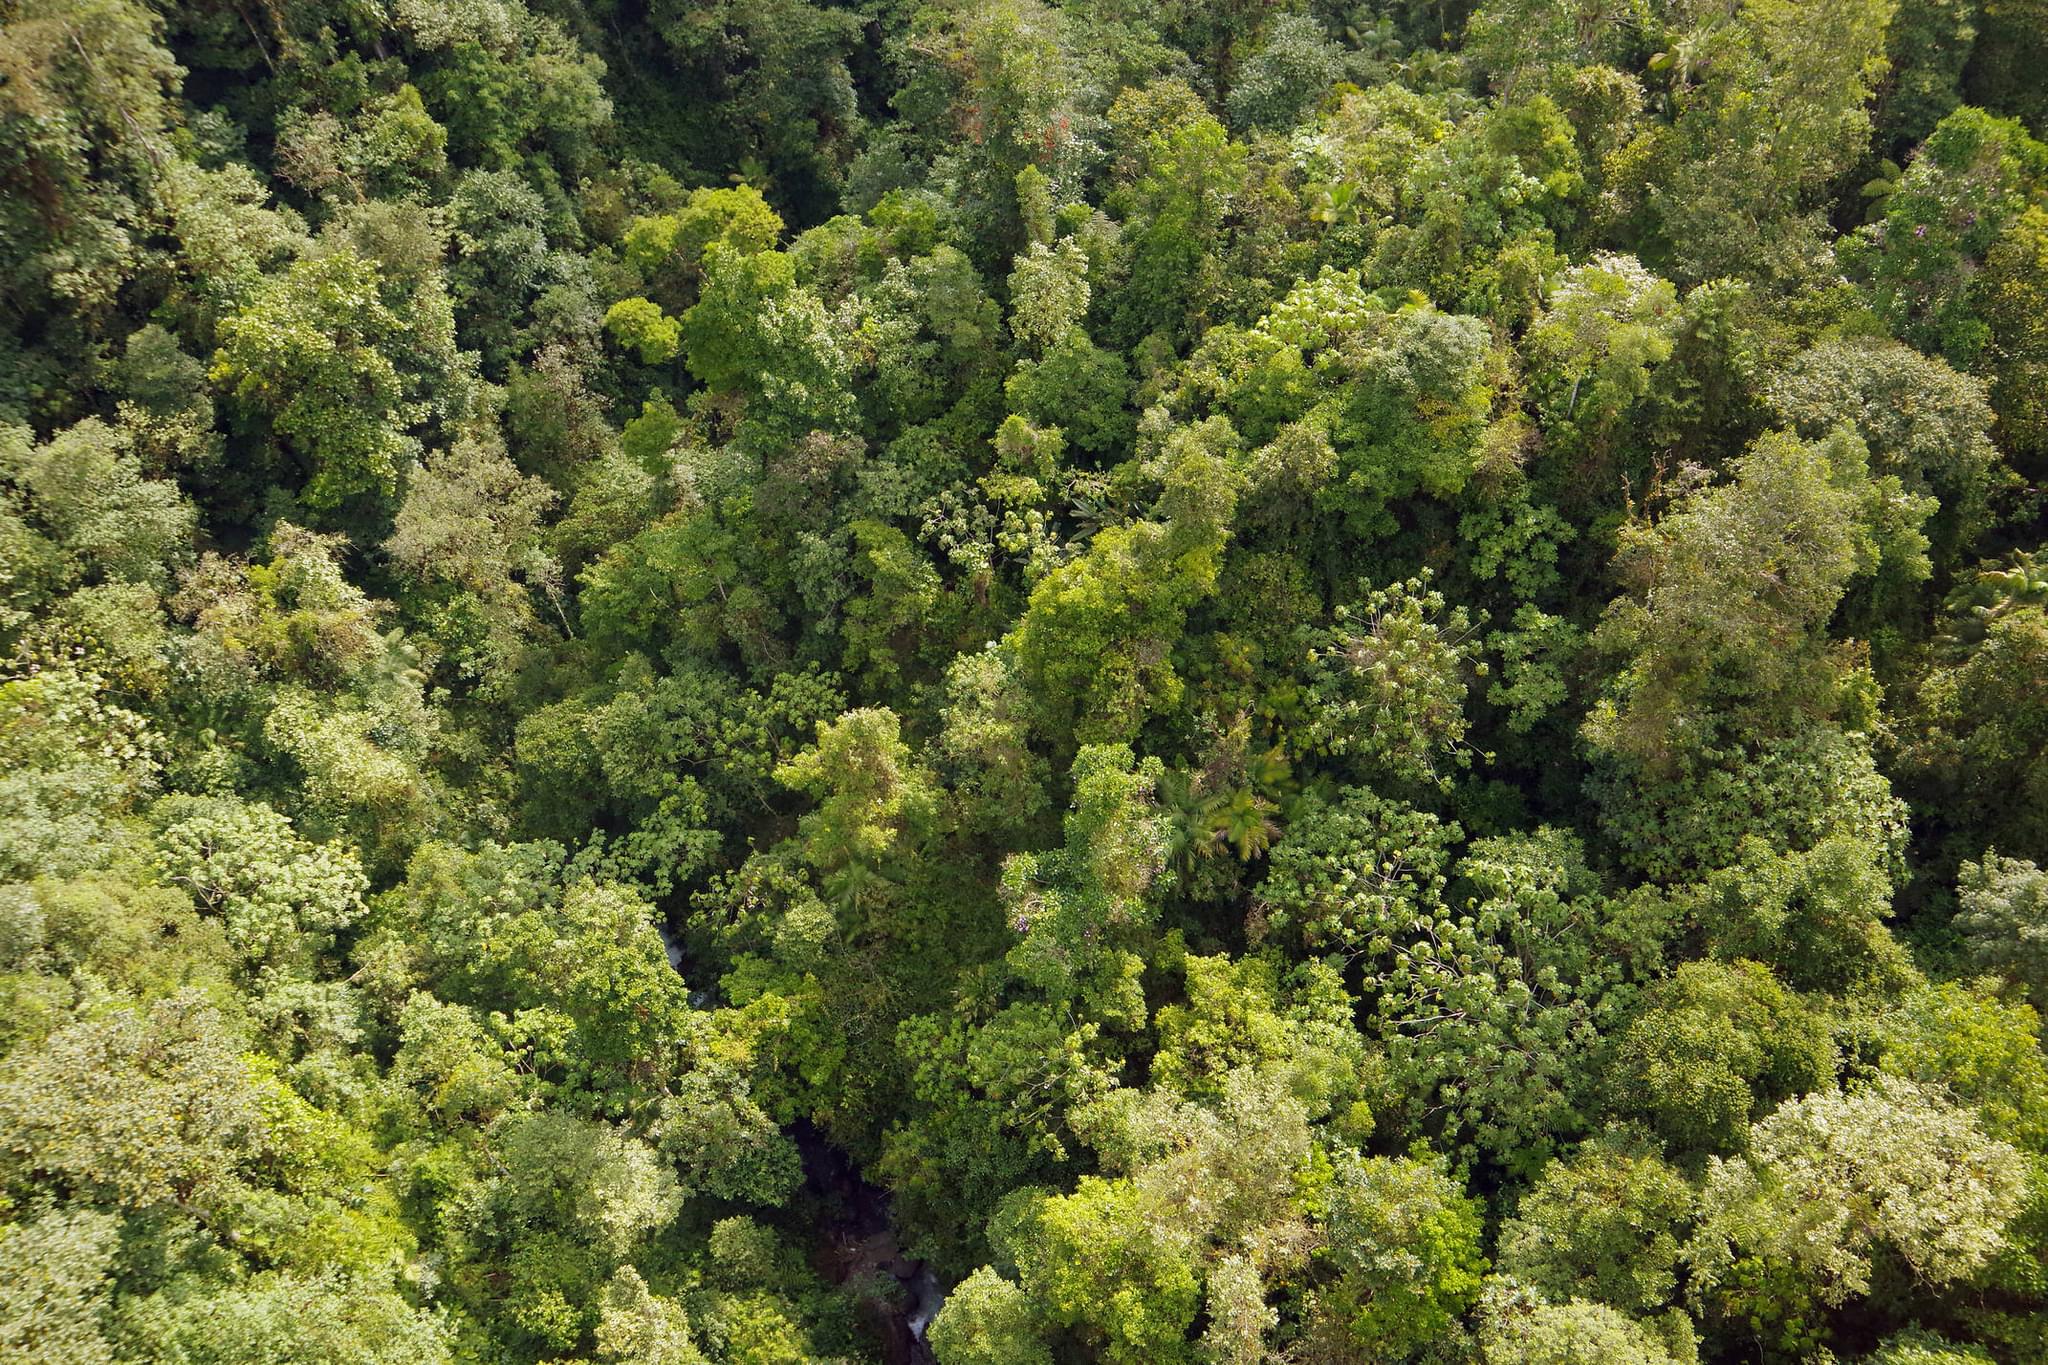 Ecuador mindo cloud forest canopy chris bladon